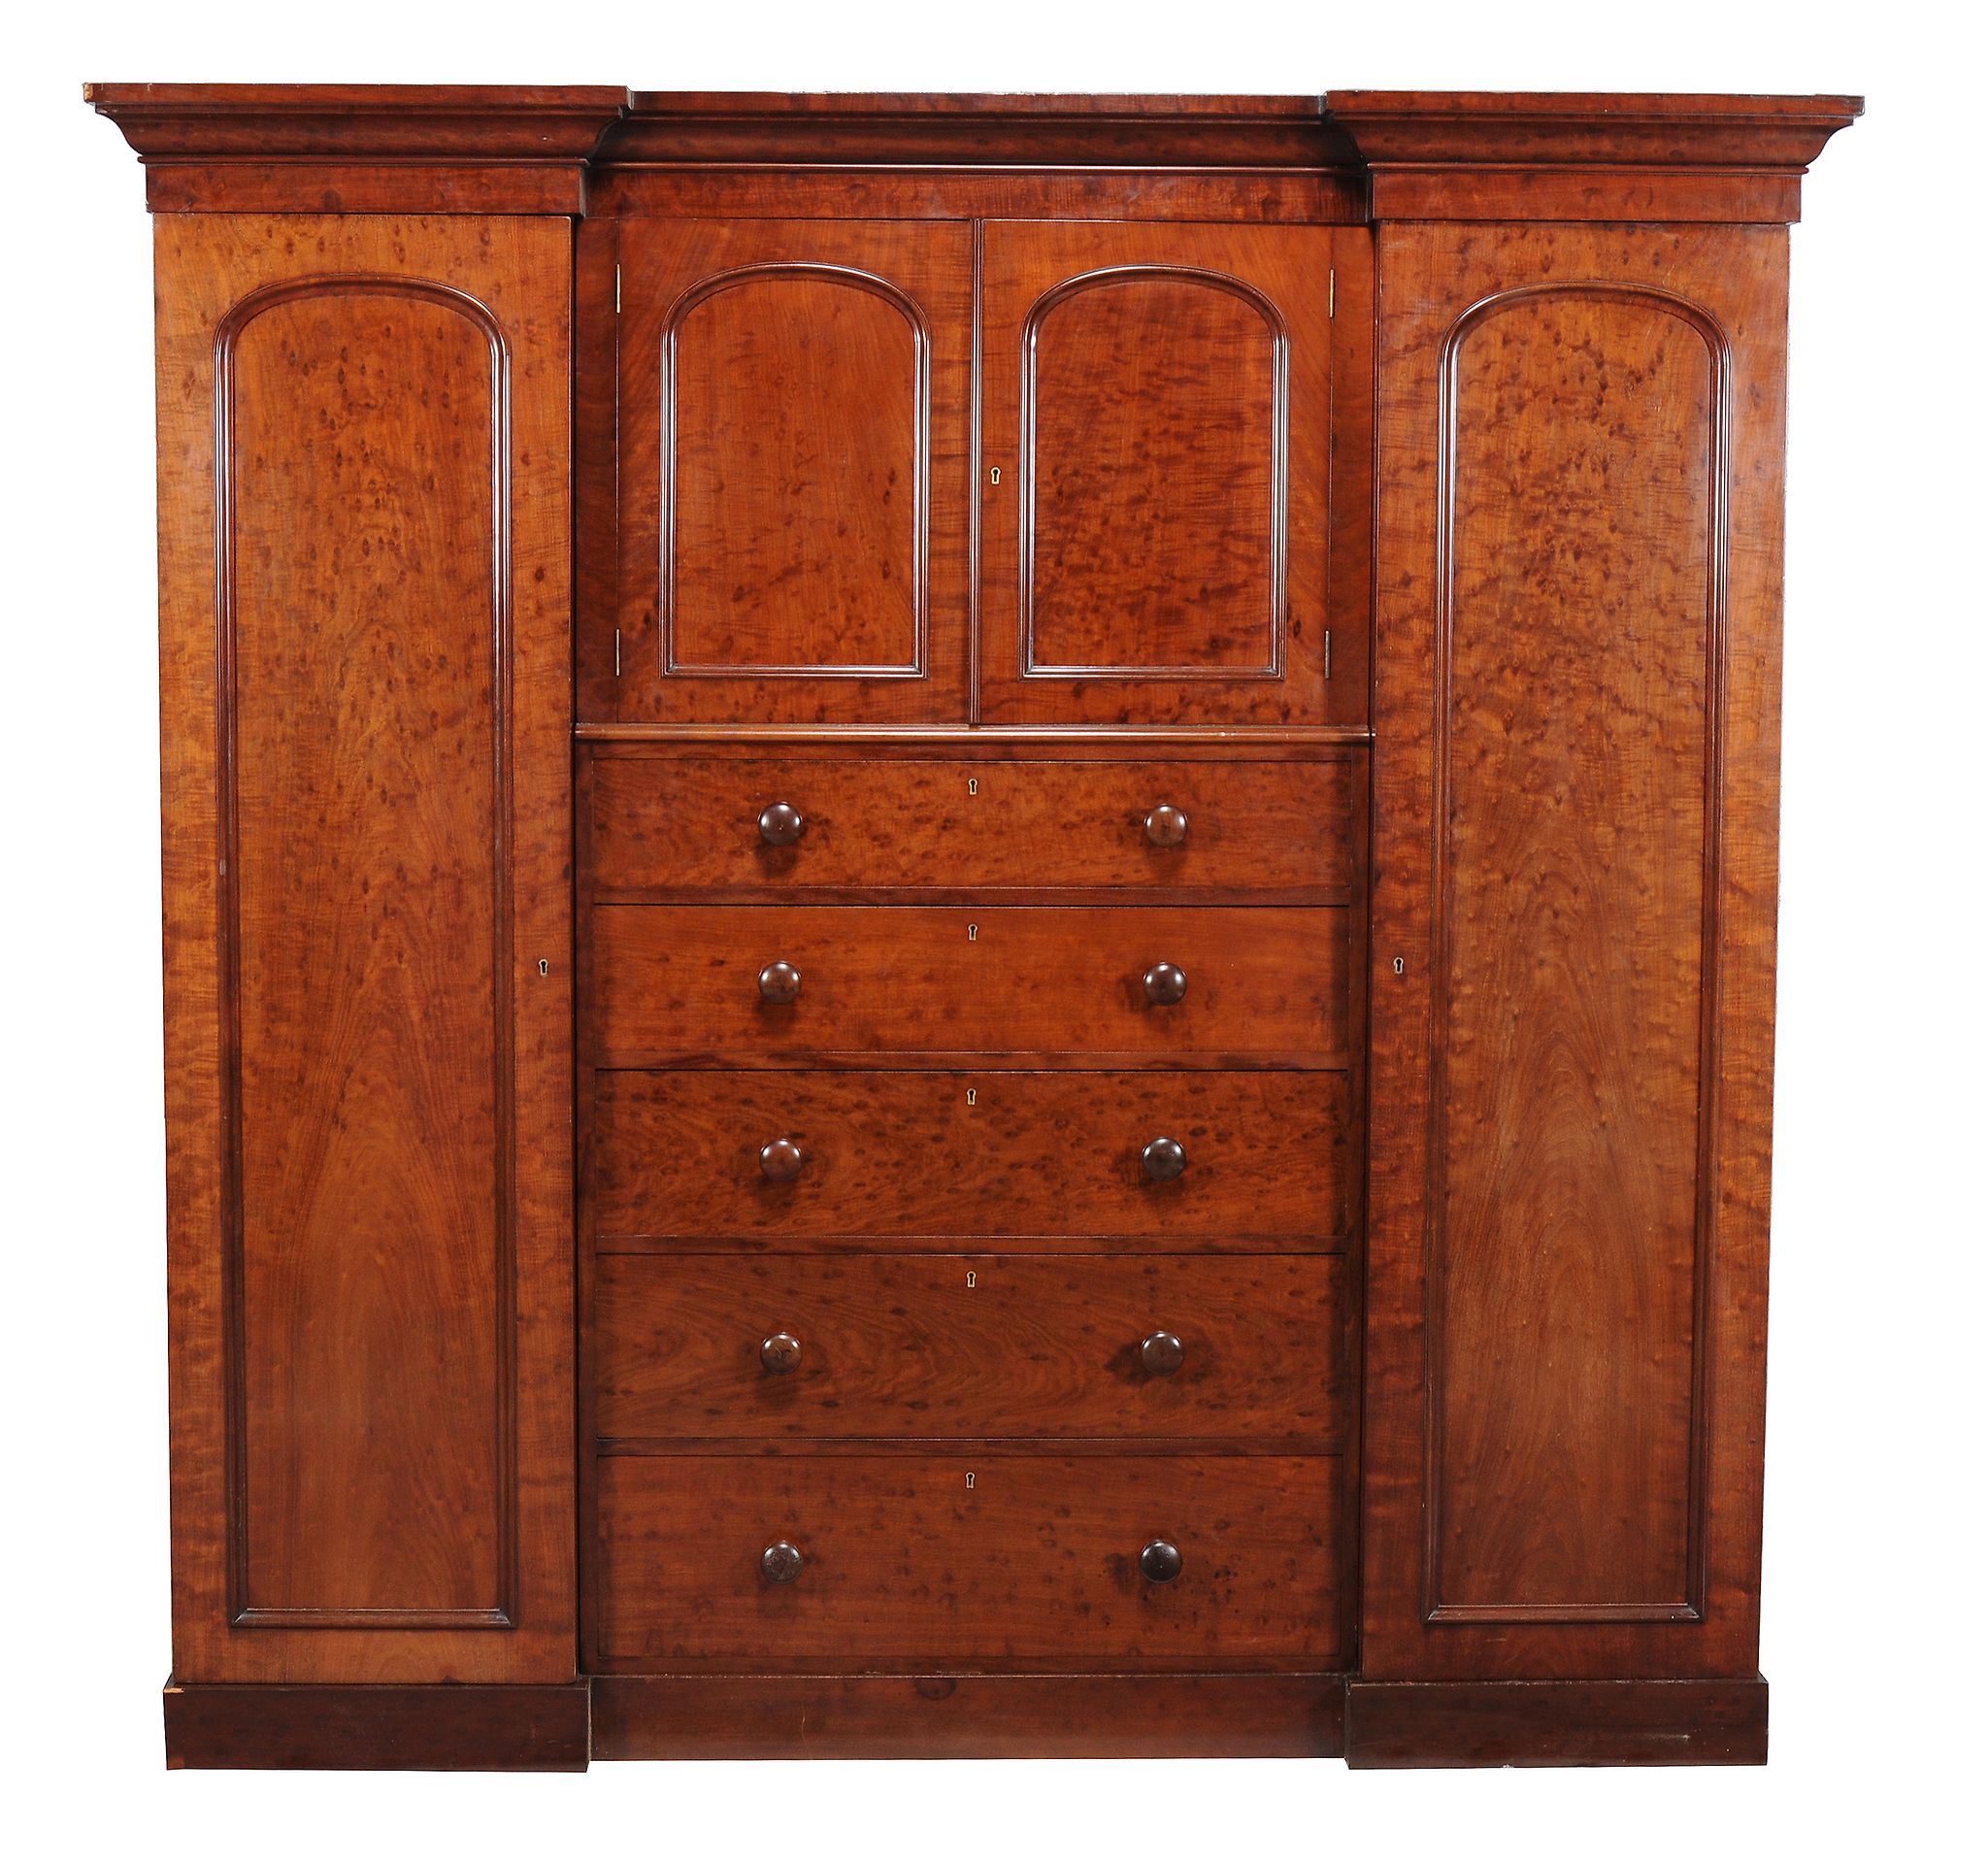 A Victorian mahogany triple section wardrobe, circa 1870, the exterior veneered with mahogany of '